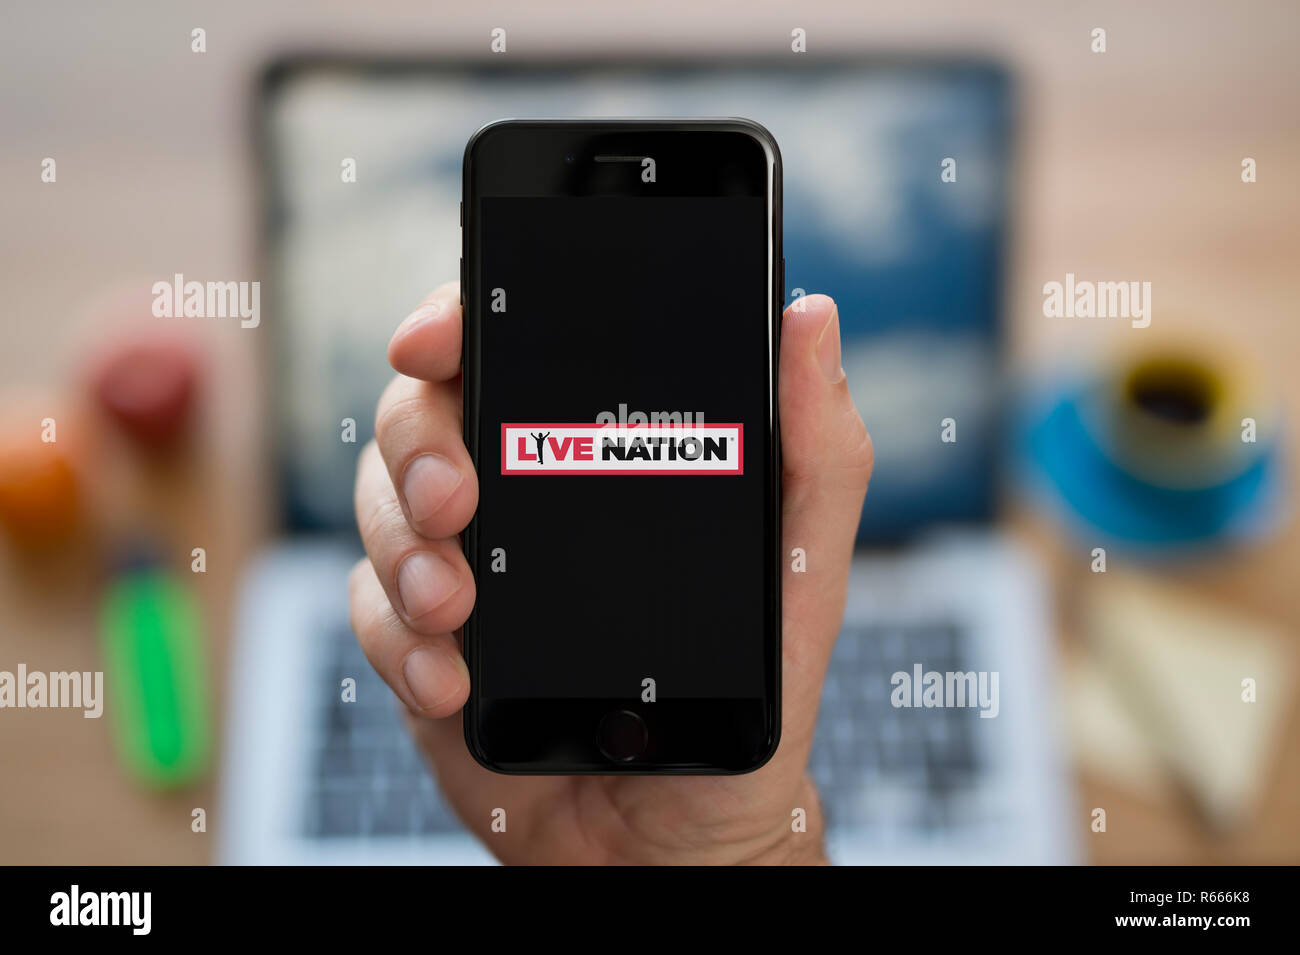 Un uomo guarda al suo iPhone che visualizza il Live Nation logo, mentre se ne sta seduto alla sua scrivania per computer (solo uso editoriale). Foto Stock